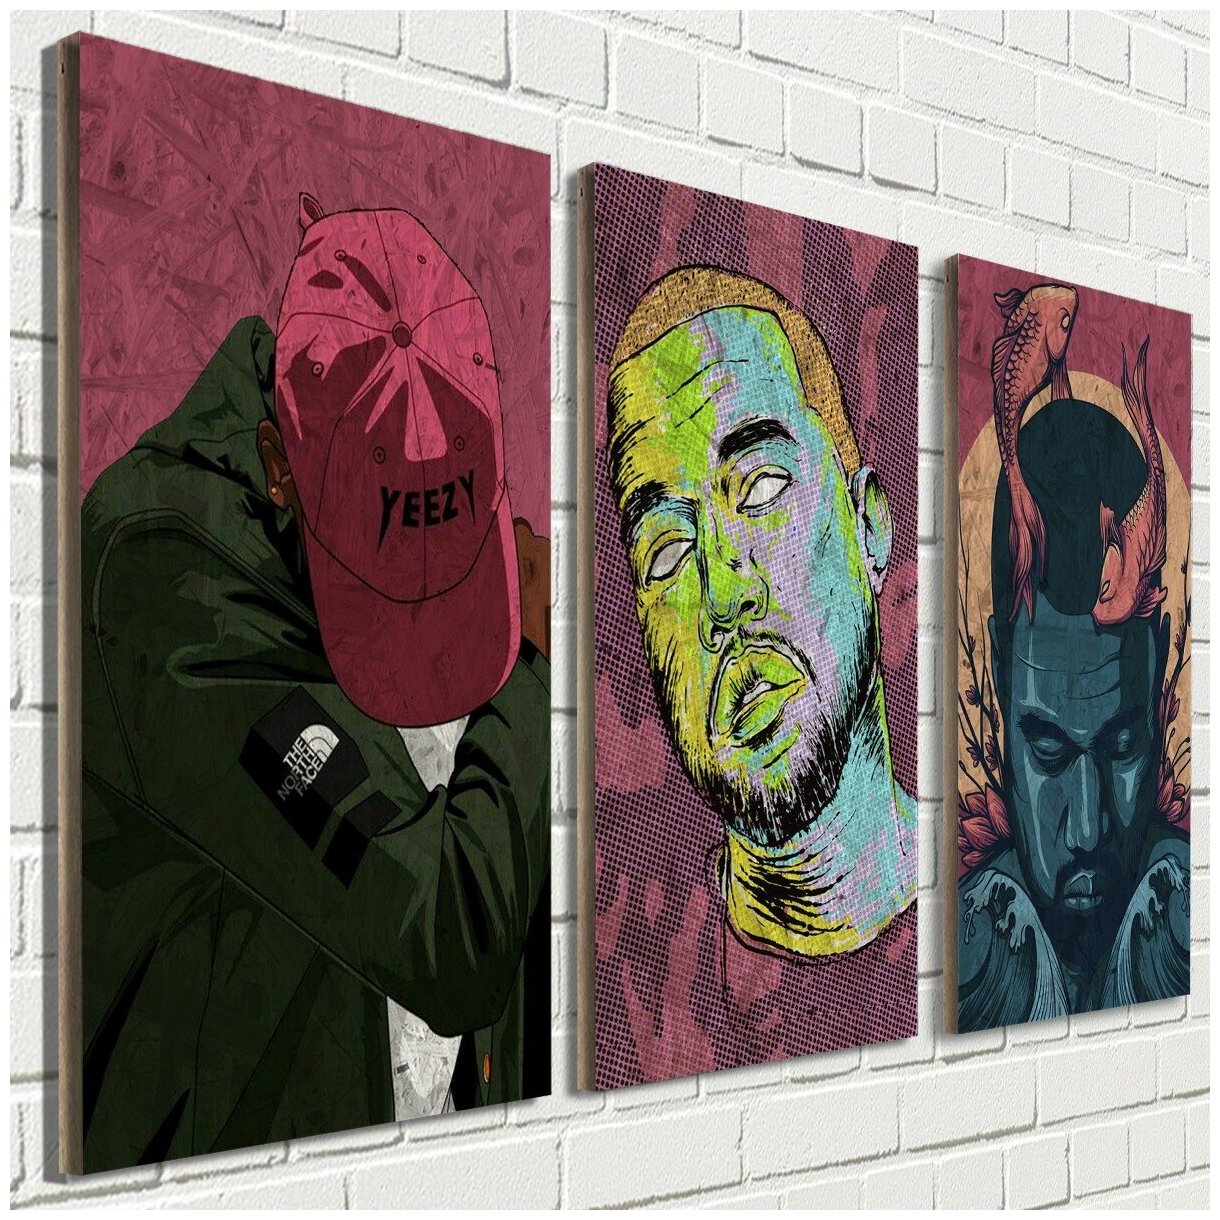 Модульная картина музыка Kanye West (Кенни Вест, Уэст) - 1065